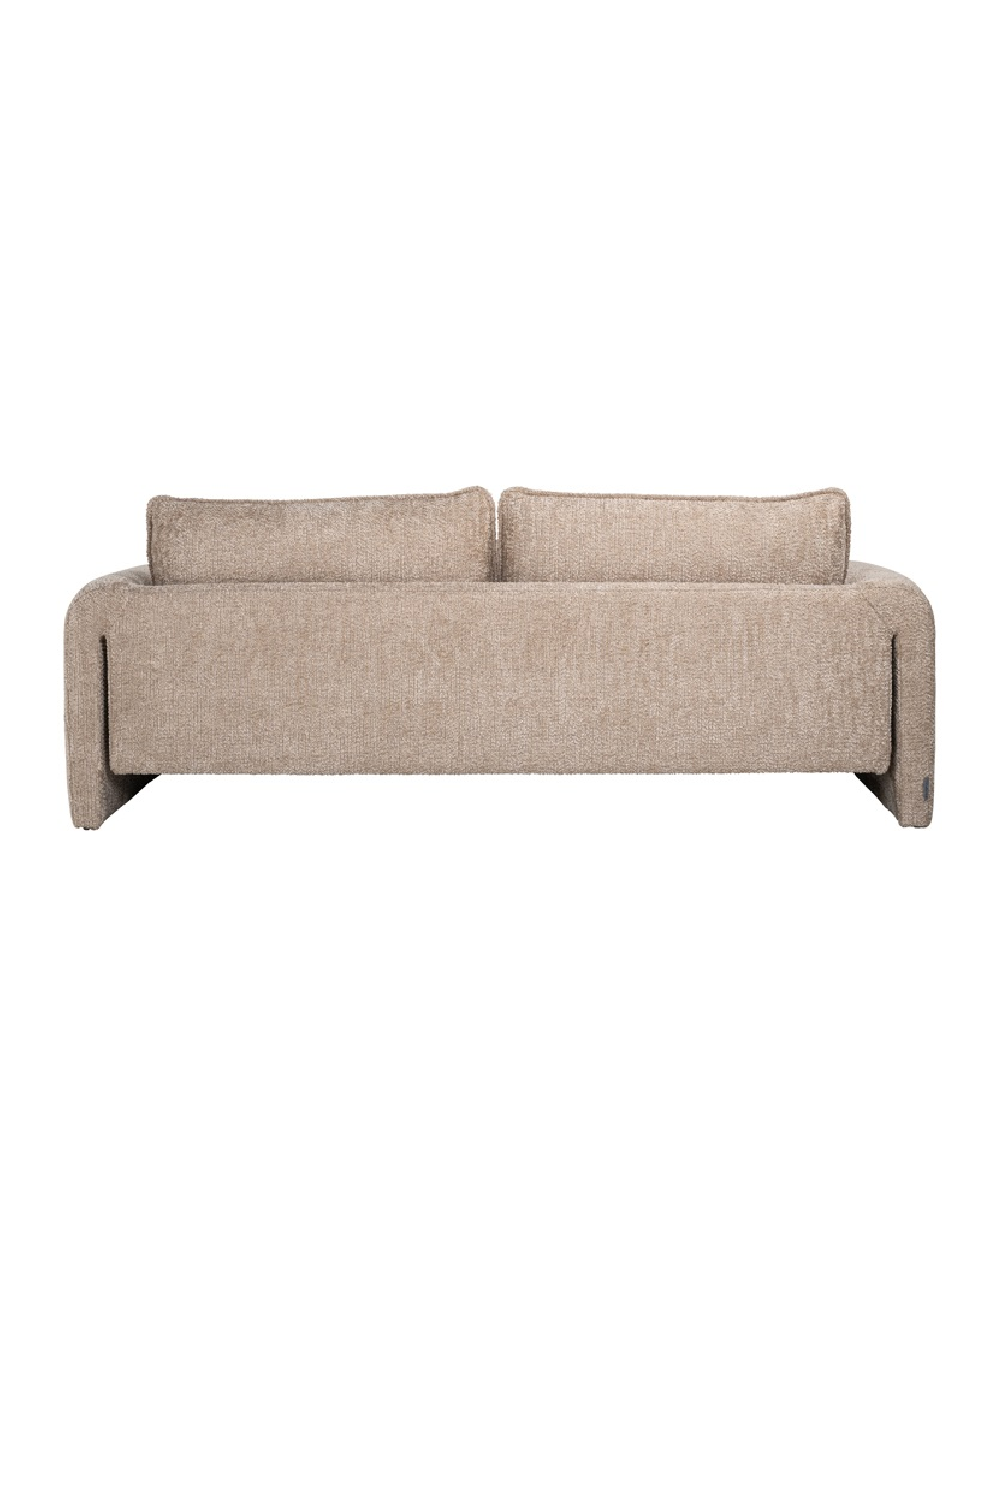 Modern Minimalist Sofa | OROA Sandro | Oroa.com